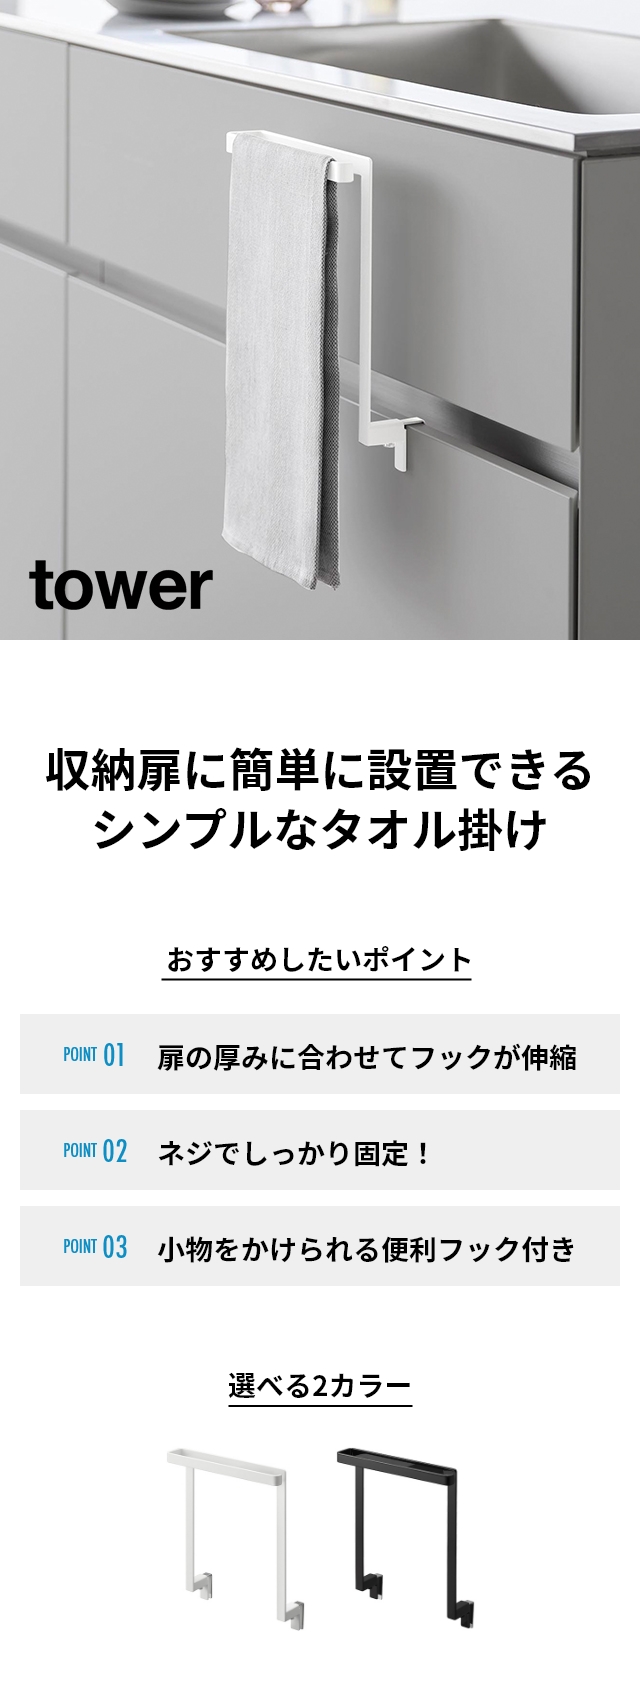 tower(タワー) キッチンシンク下収納扉タオルハンガー